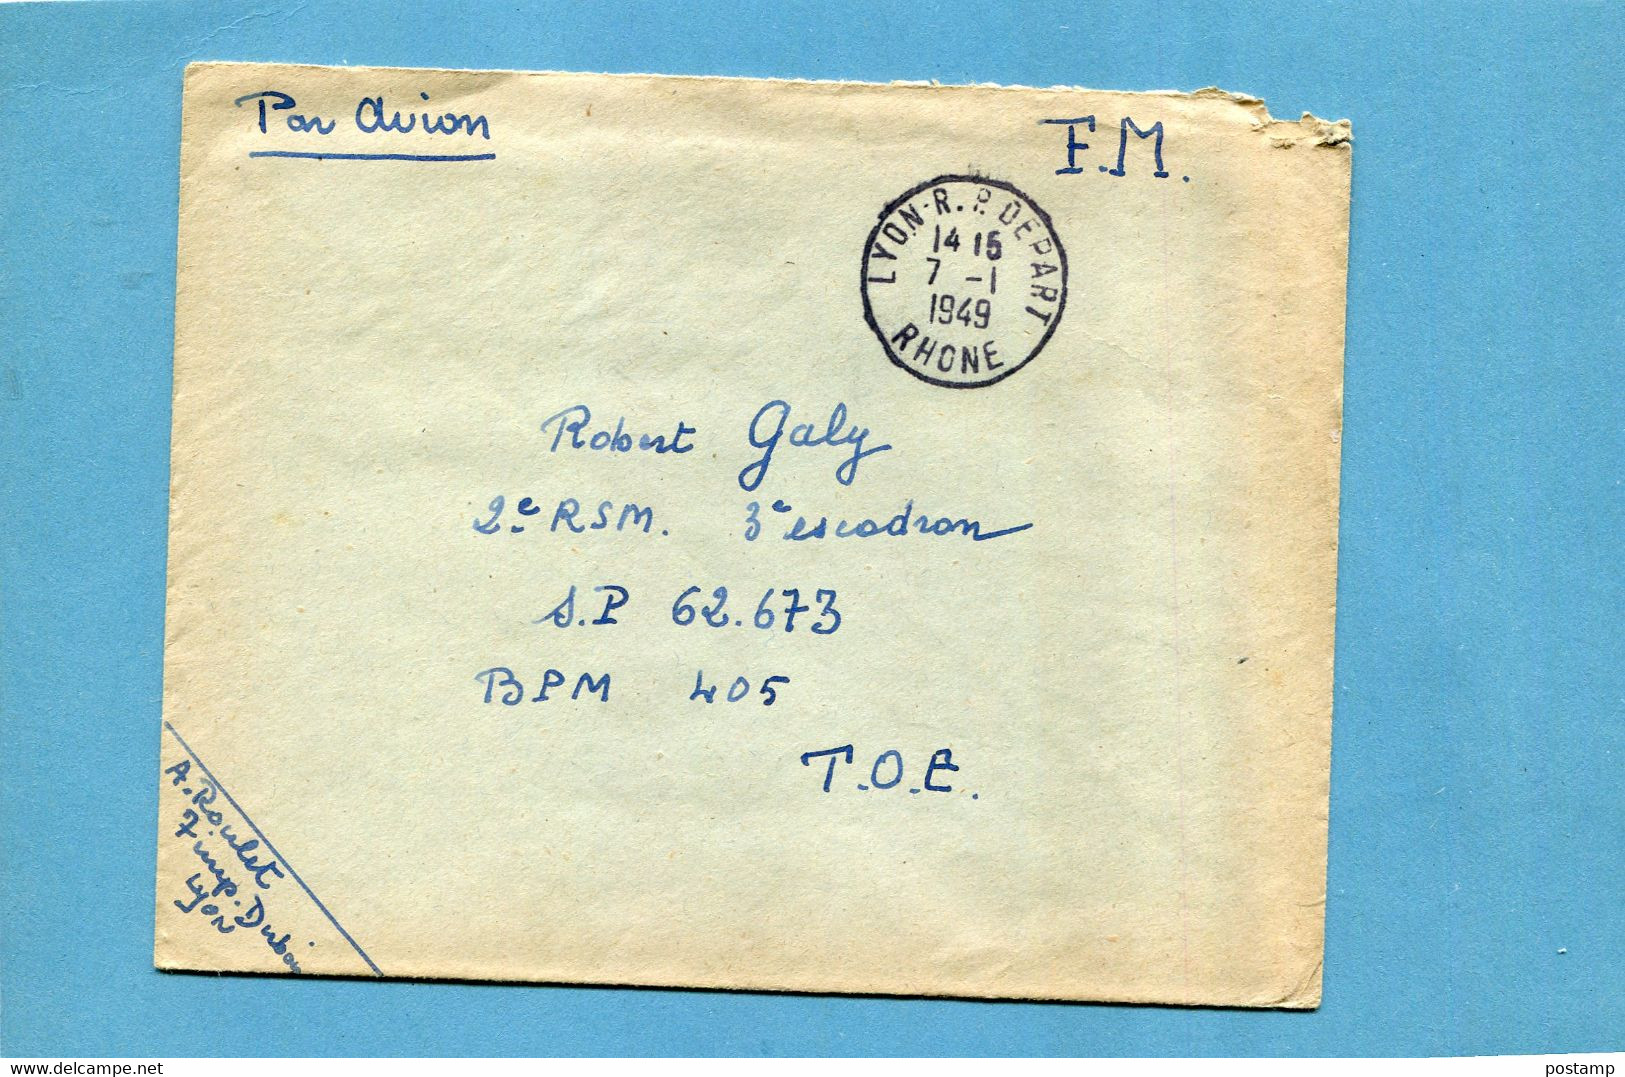 Marcophilie-guerre -indochine-Lettre En FM  Cad Lyon 1949 Pour T O E SP  62673 BPM 405 - Guerre D'Indochine / Viêt-Nam